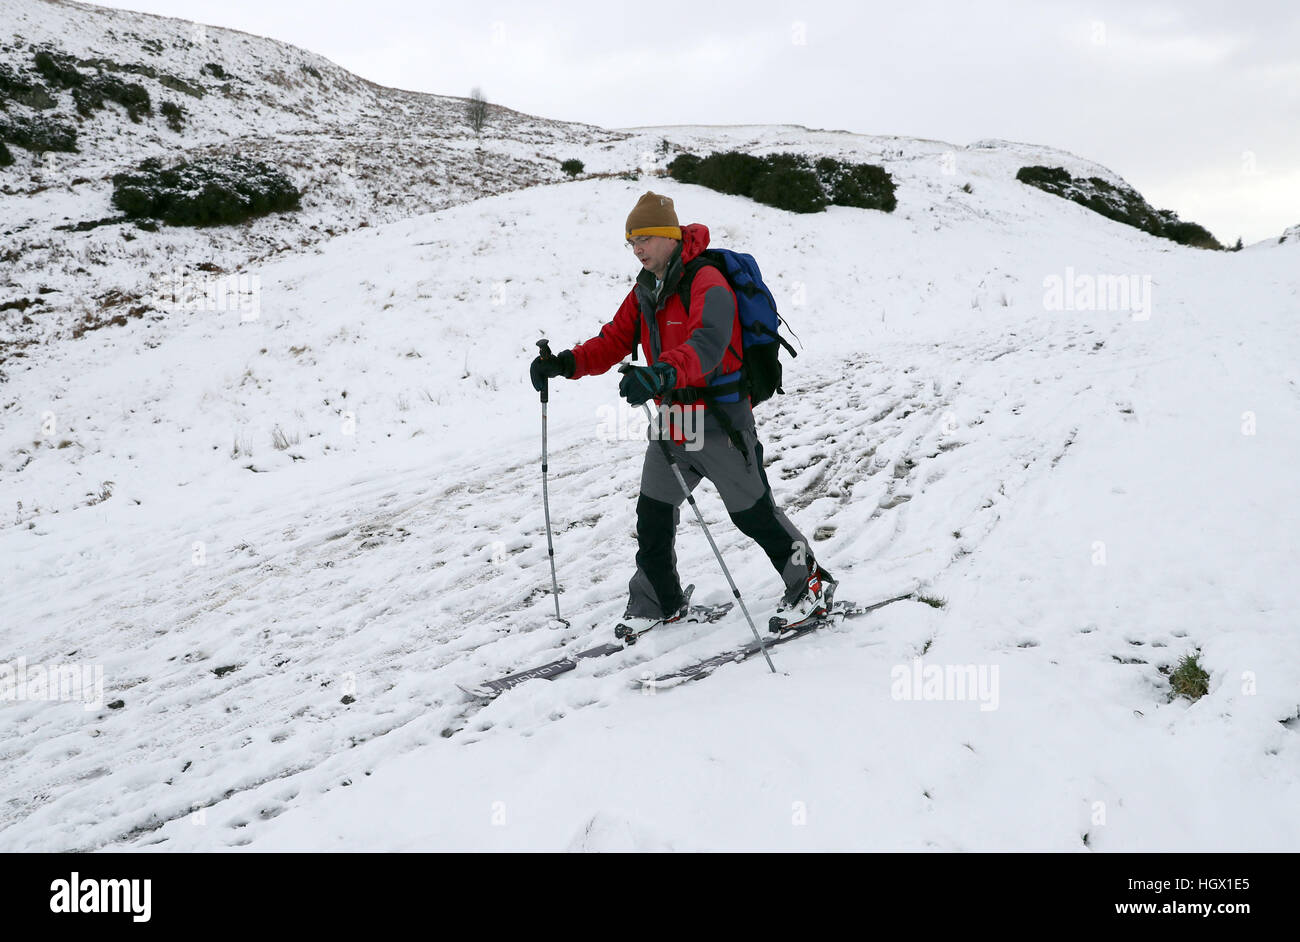 Pascal Lardet sciare giù Dumyat nel Ochils, vicino a Stirling, dopo il Met Office emessi avvisi di maltempo in tutta l'Inghilterra, Scozia, Galles e Irlanda del Nord per le combinazioni di forte vento, neve e ghiaccio. Foto Stock